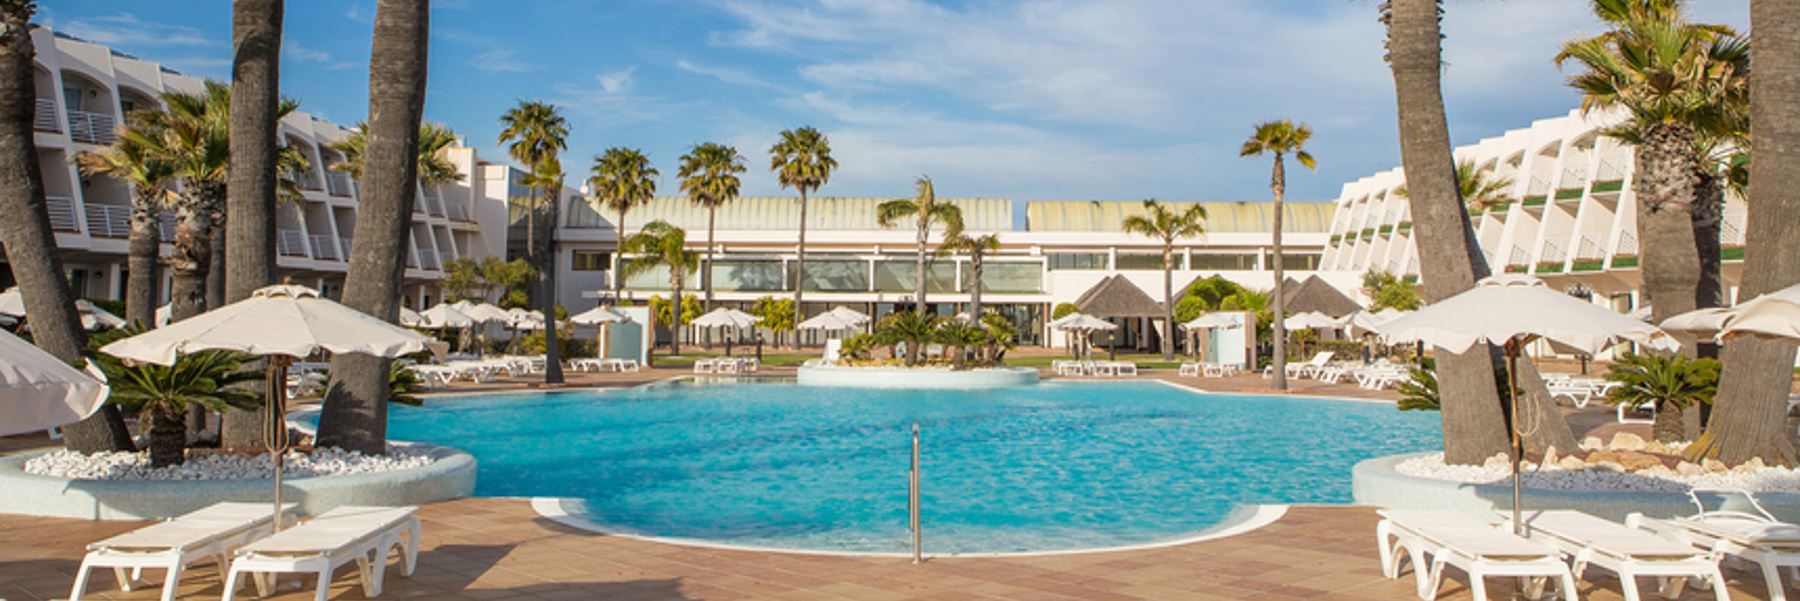 Oferta Hotel Iberostar Royal Andalus en todo incluido. Uno de los mejores hoteles de Andalucía